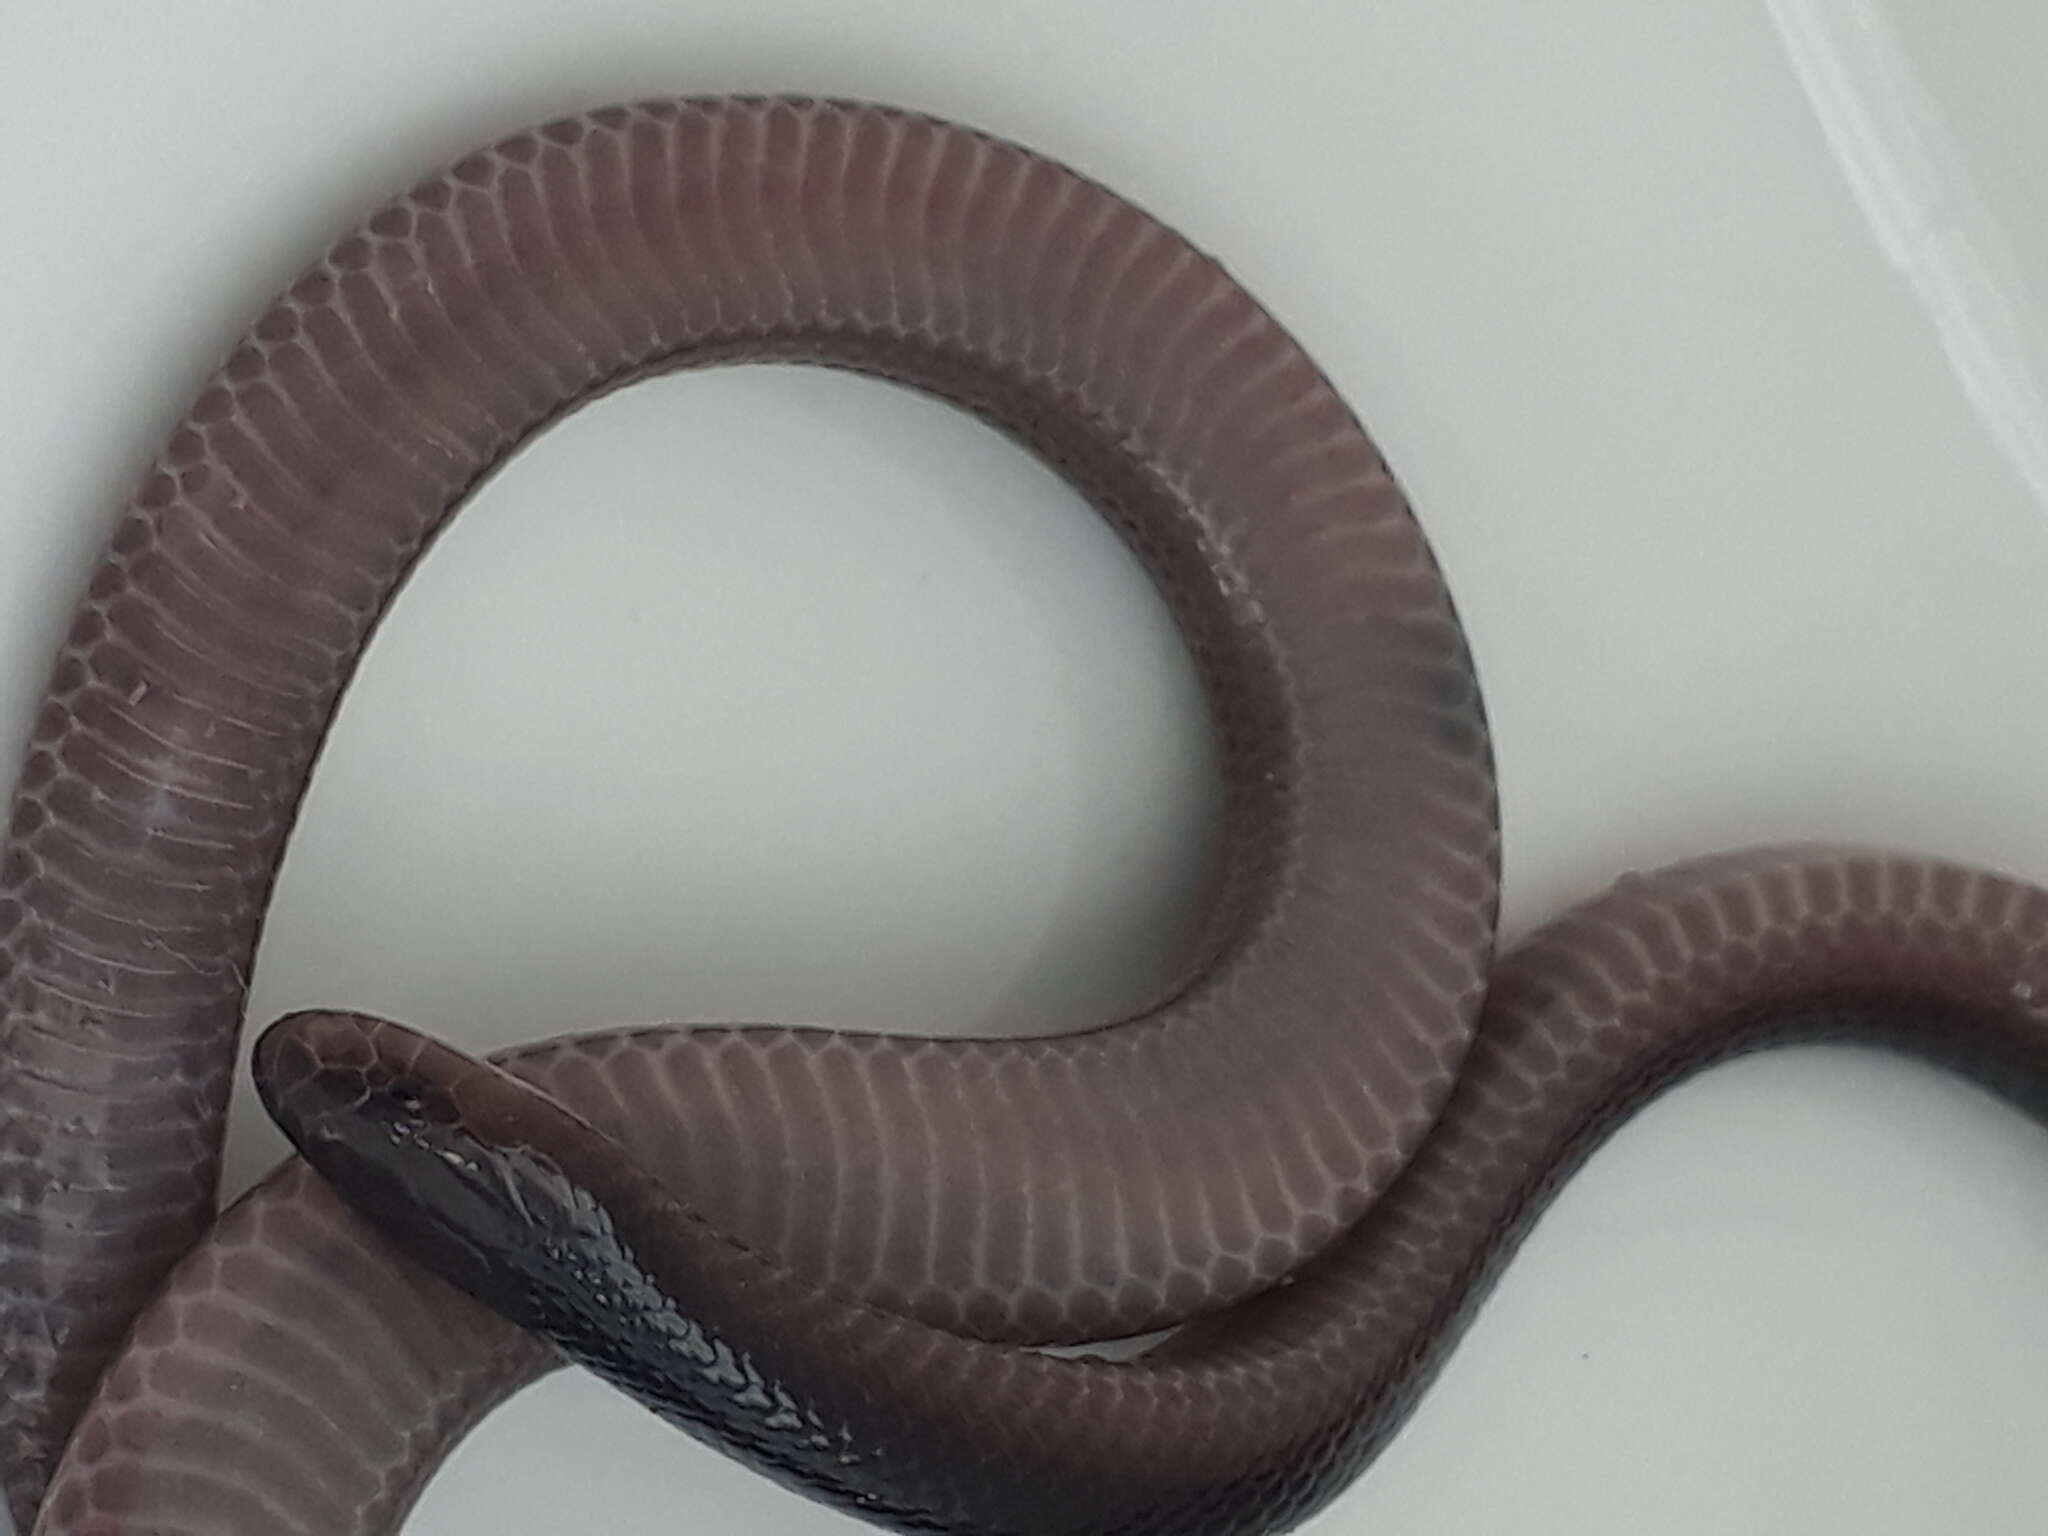 Image of Bibron’s Stiletto Snake